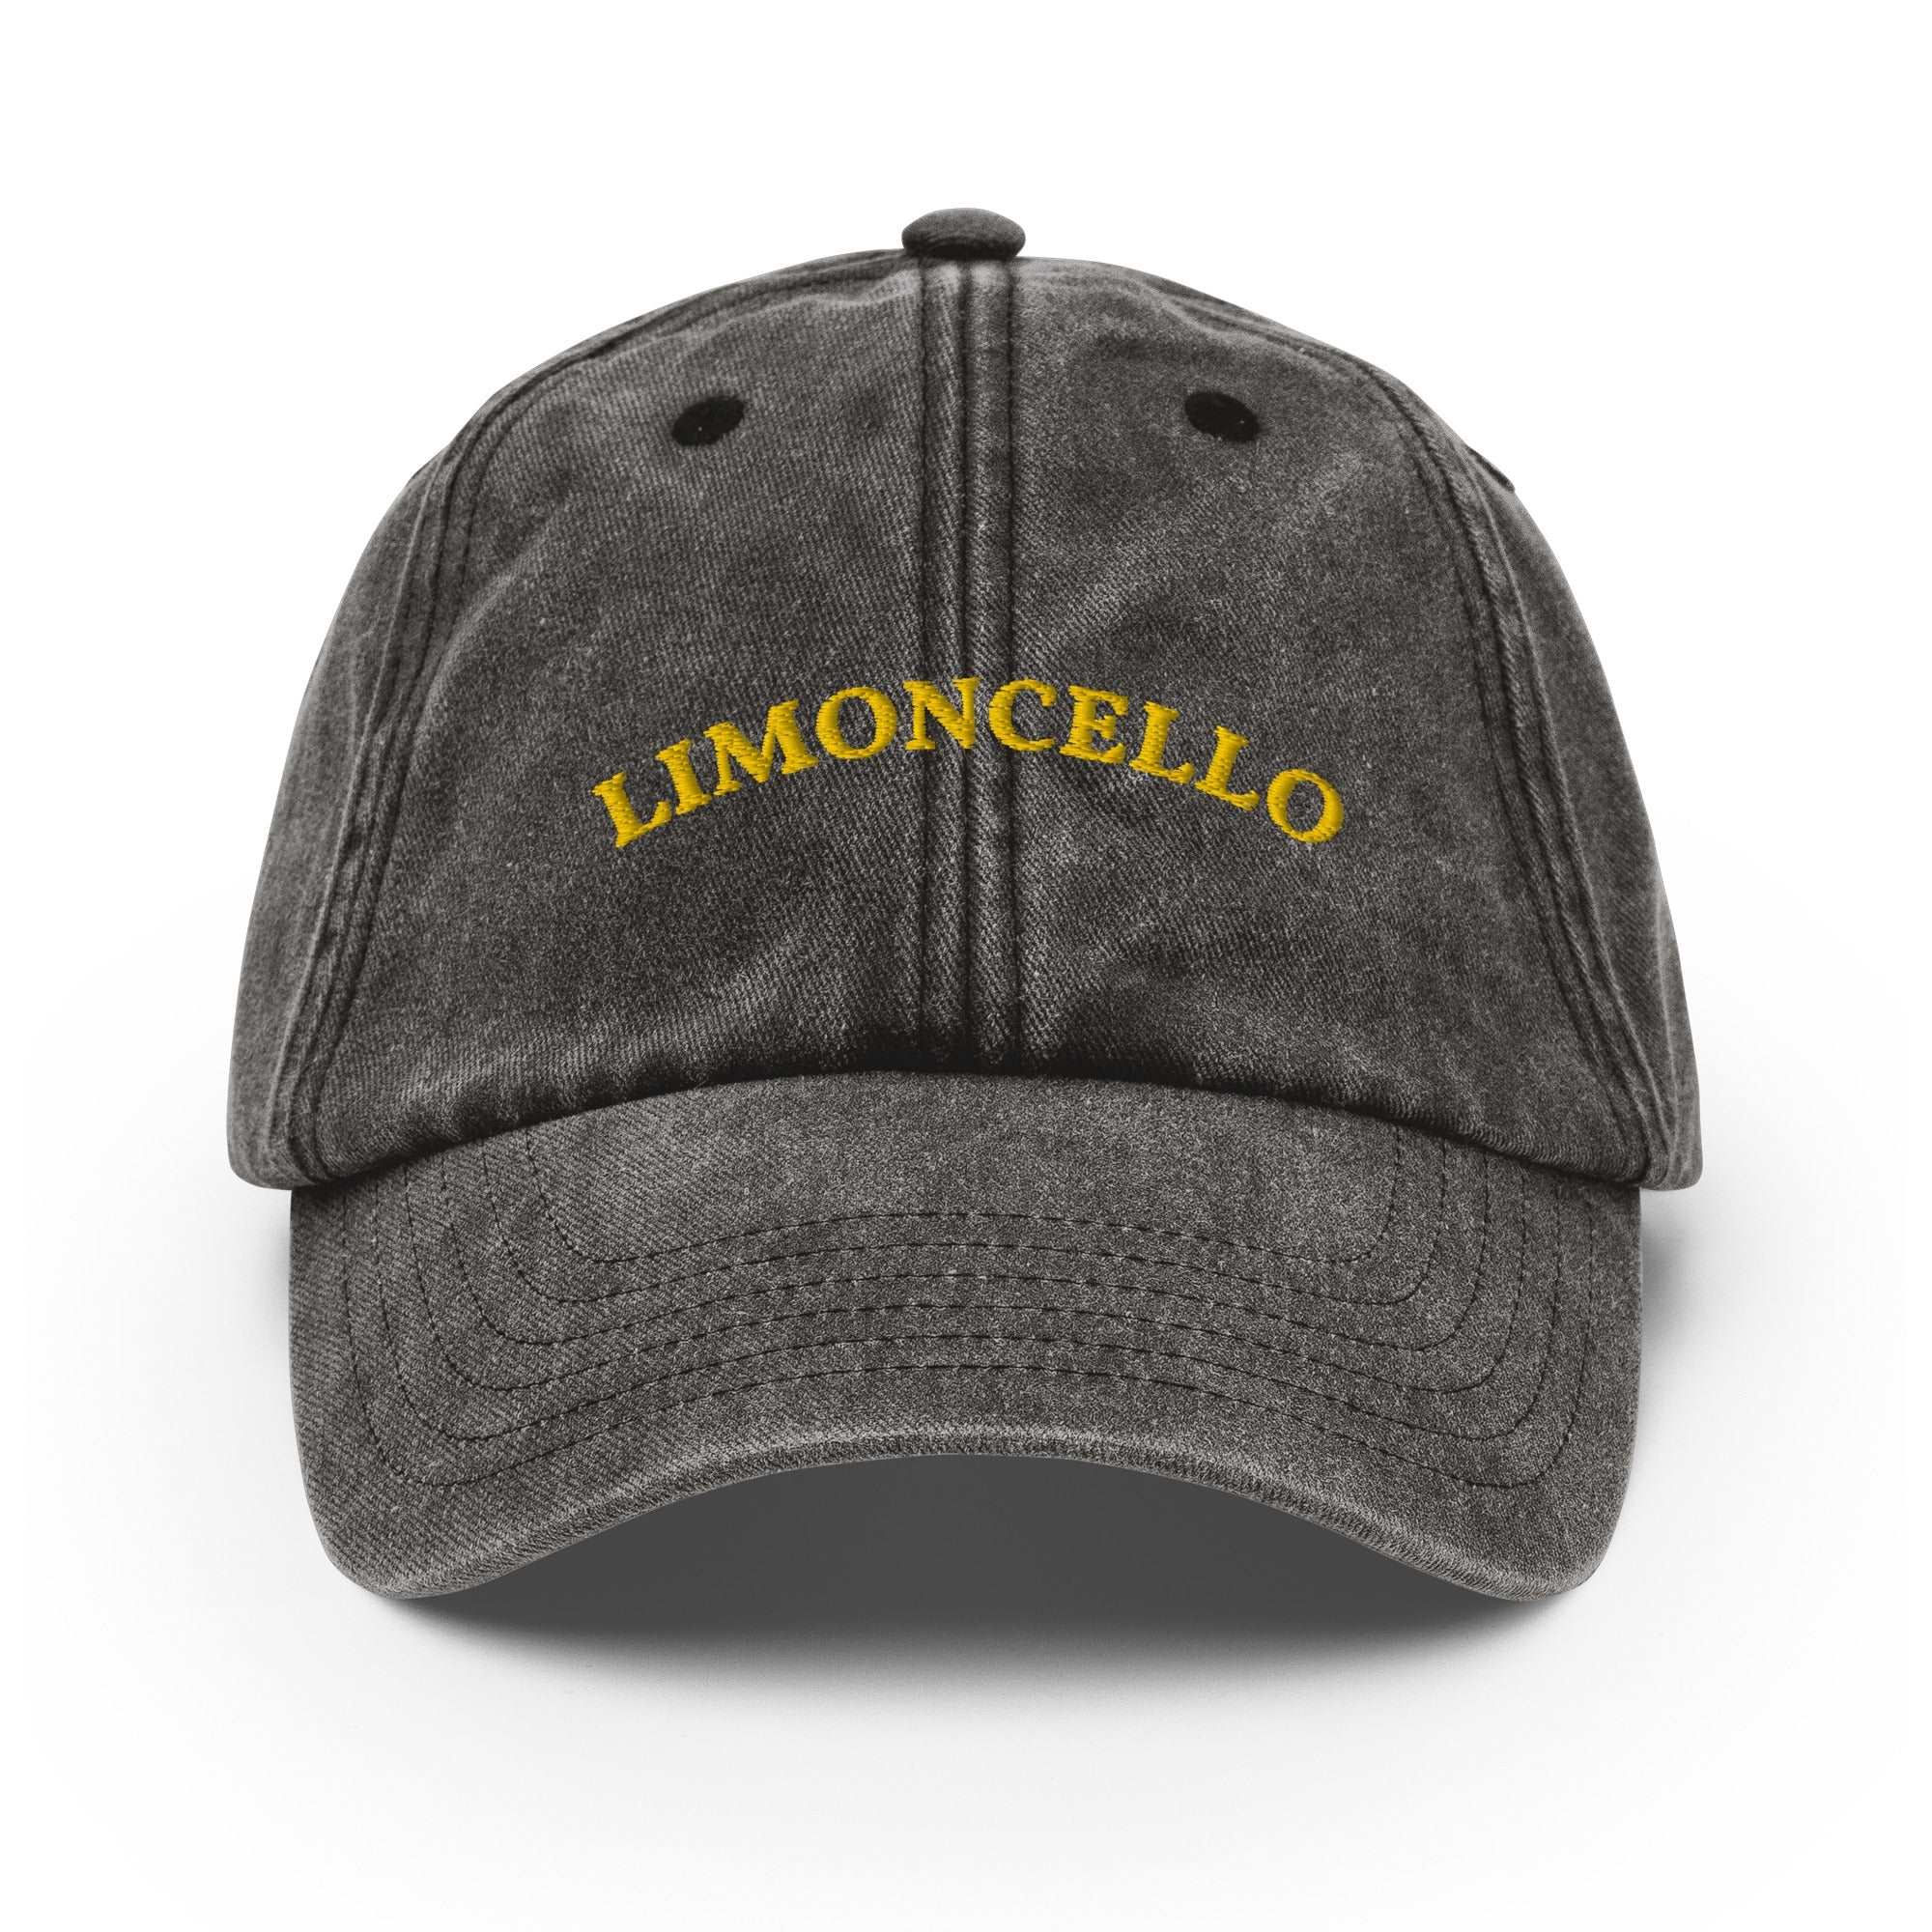 Limoncello Vintage Cap - The Refined Spirit